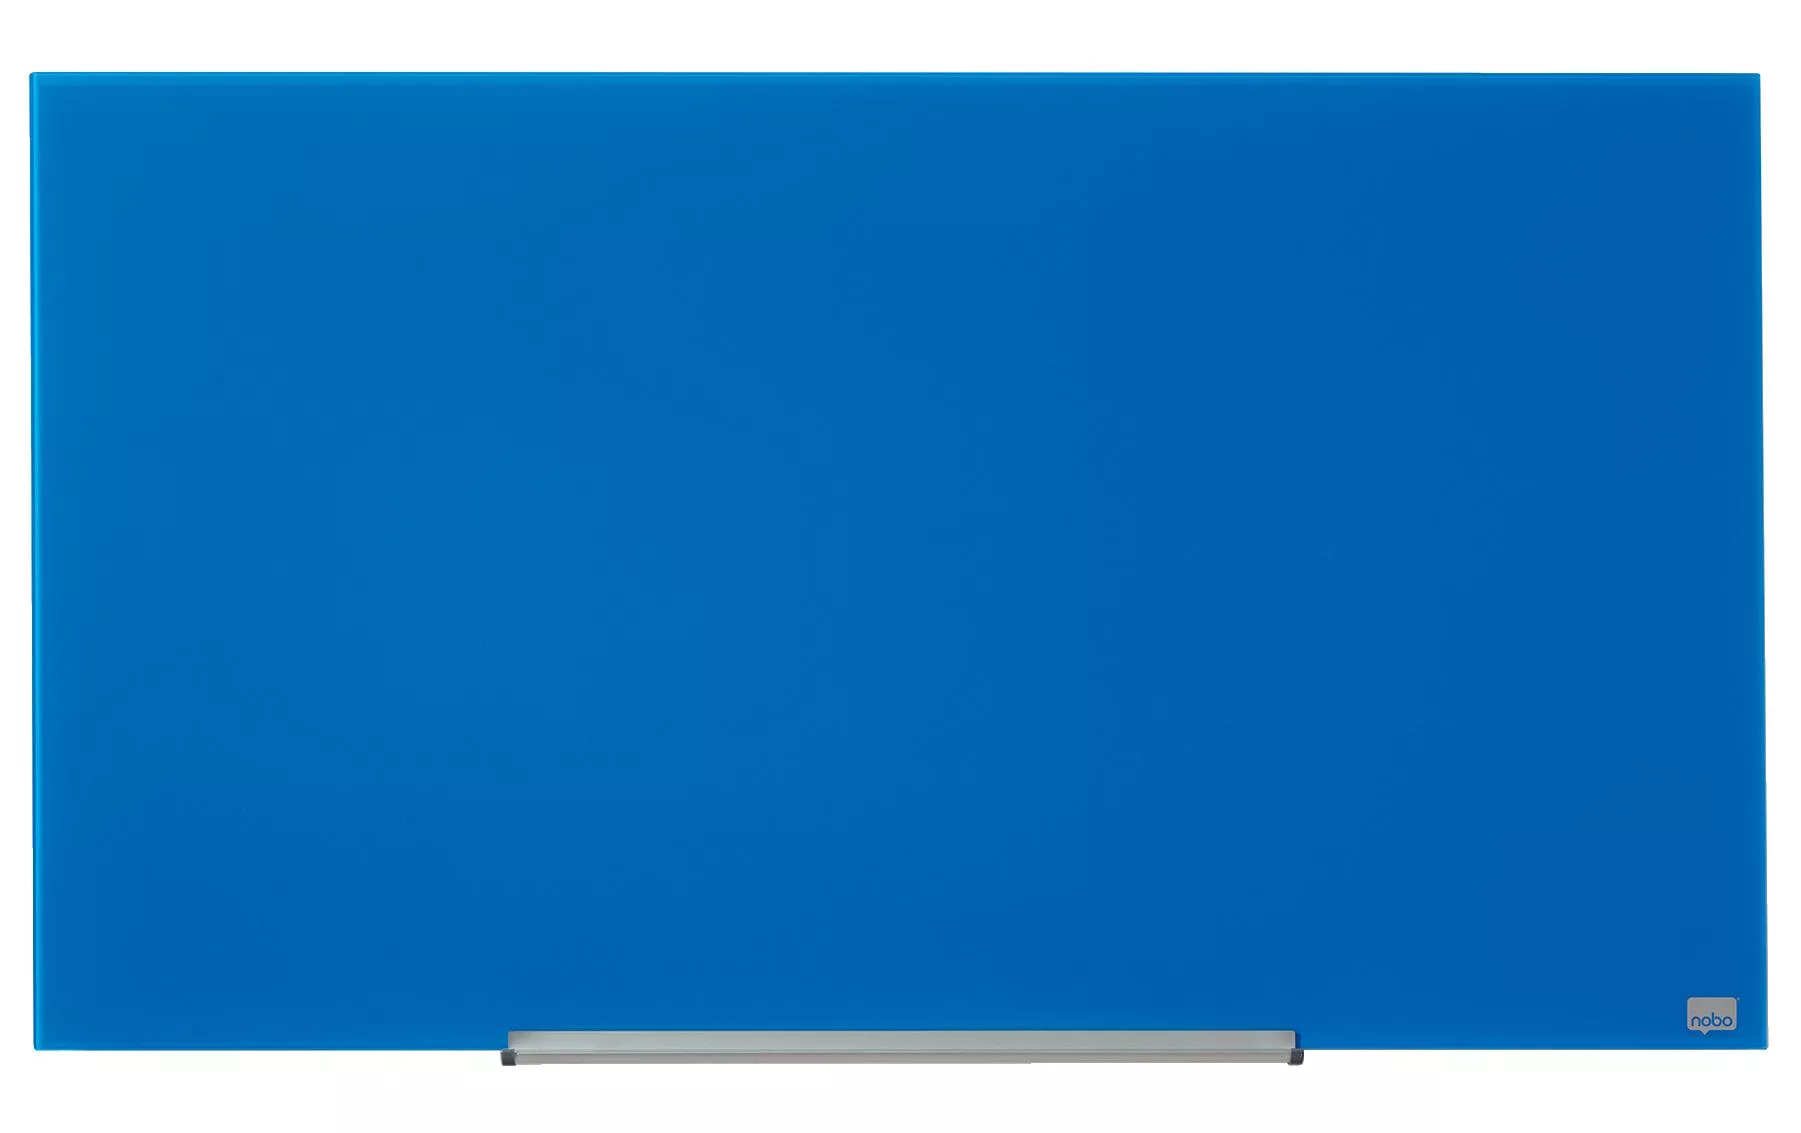 Magnethaftendes Glassboard Impression Pro 57\", Blau